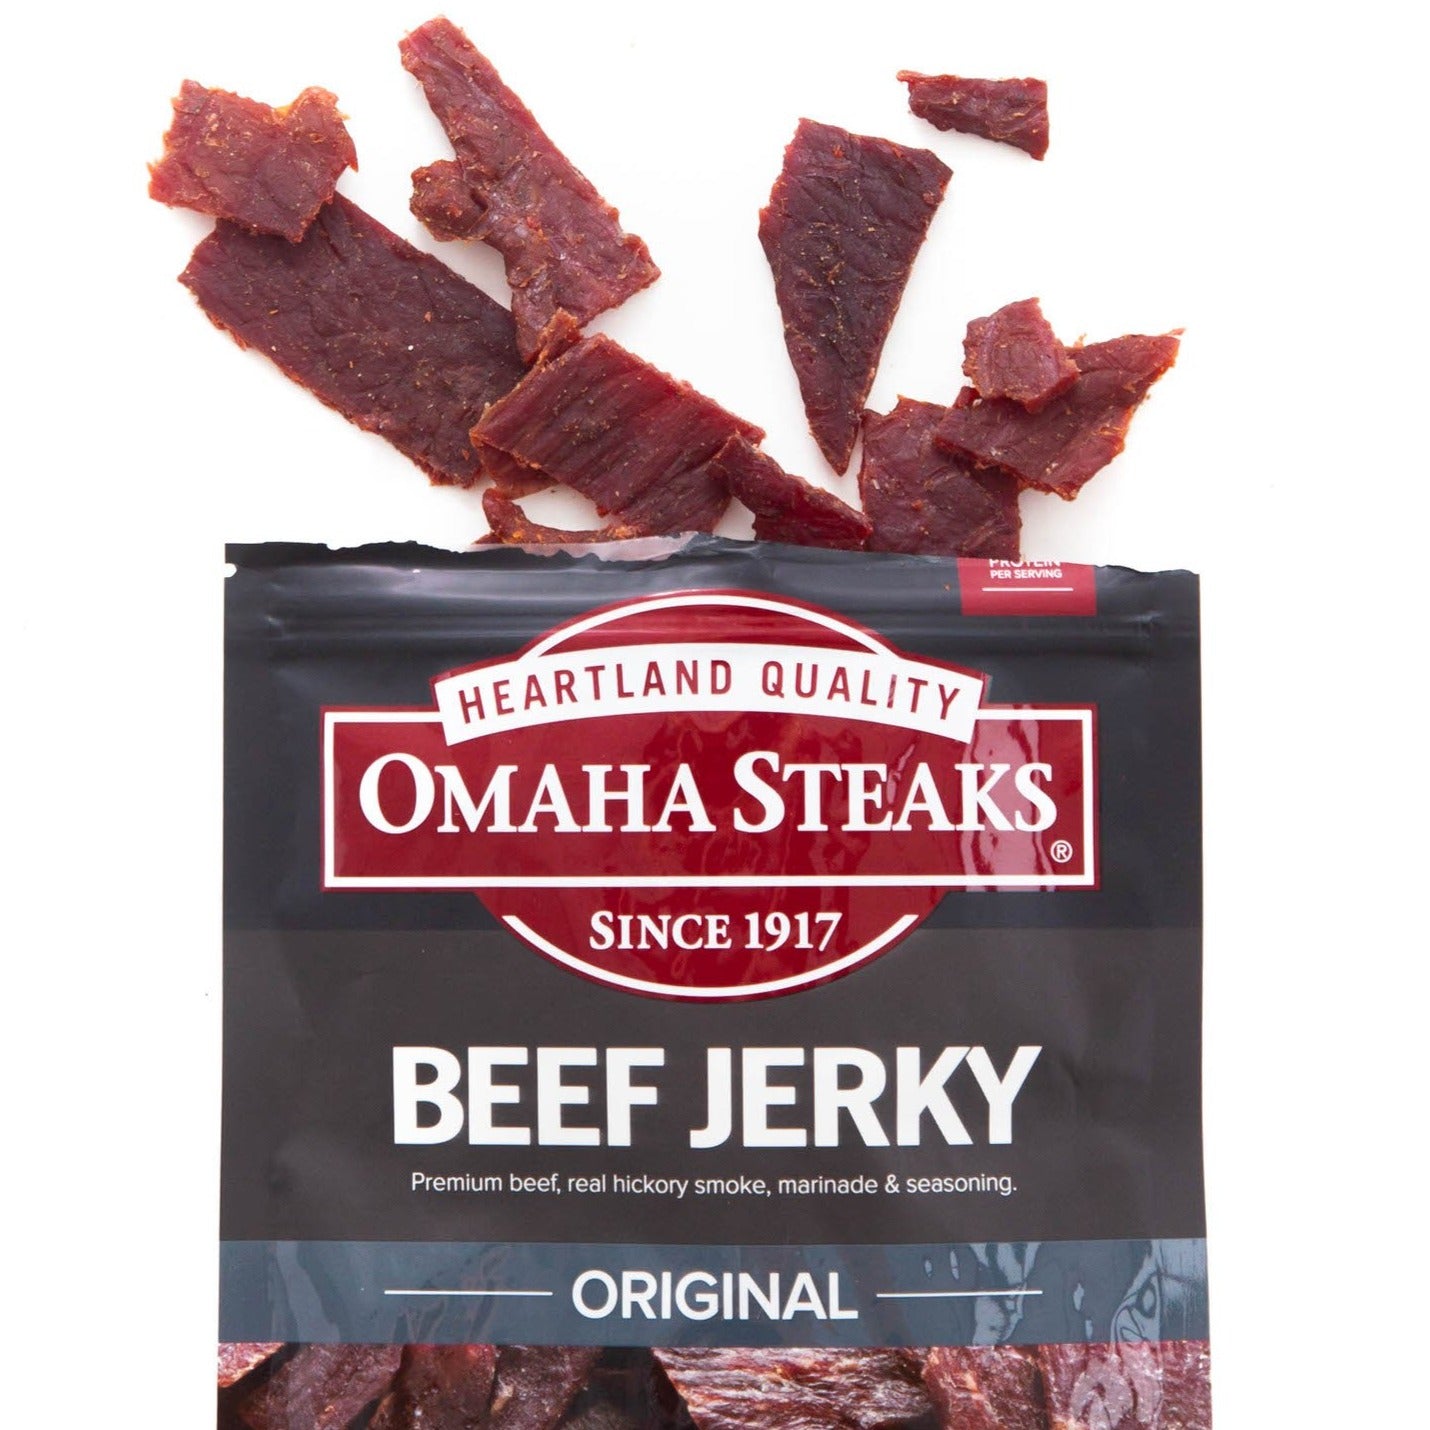 Omaha Steaks Original Beef Jerky - Nebraska In A Box